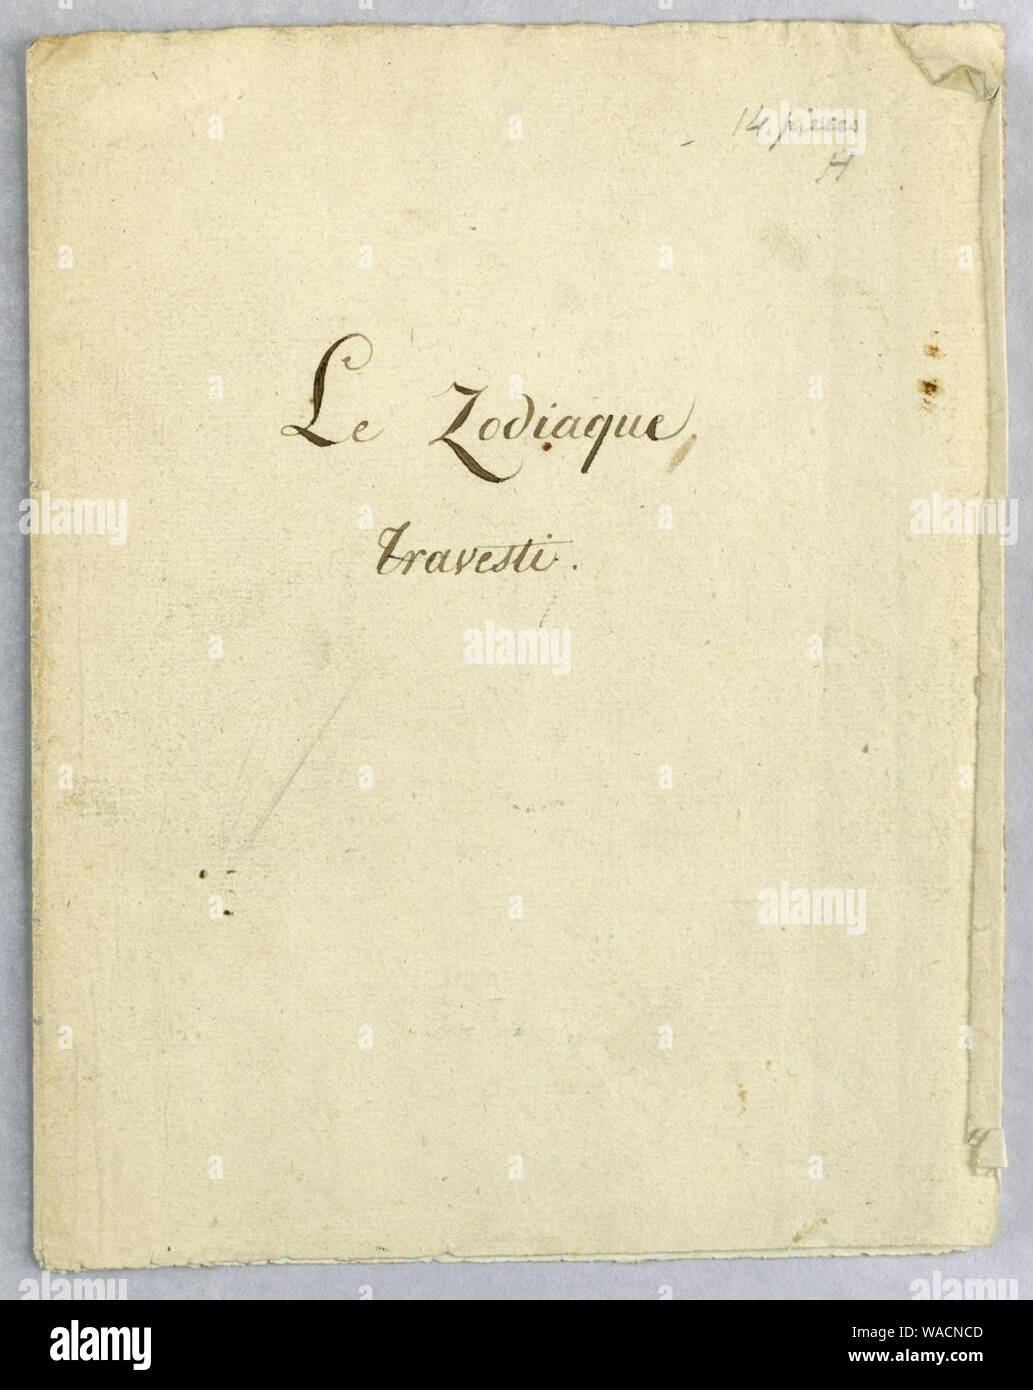 Documento, Album Cover Design per le Zodiaque travesti (la farsa Zodiac), 1824 Foto Stock